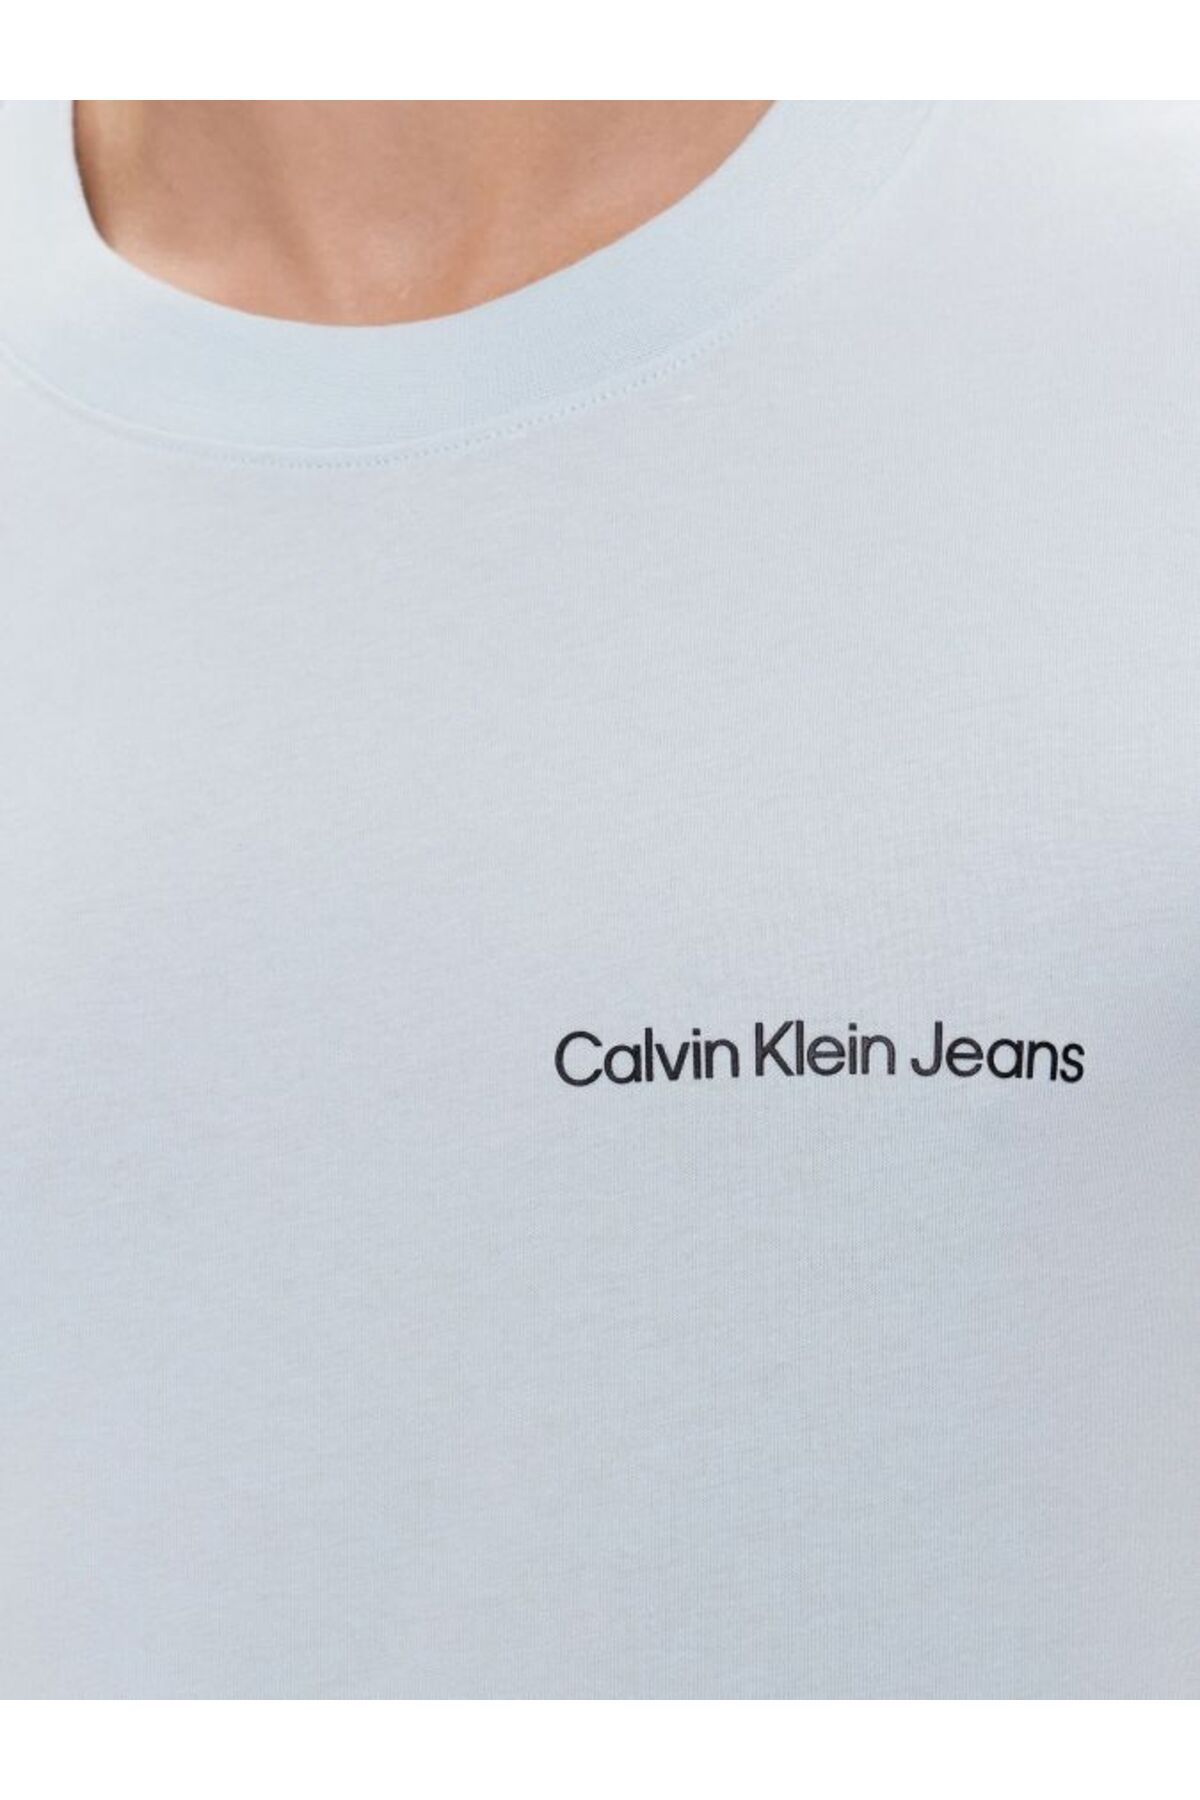 Calvin Klein Calvin Klein پیراهن تی شرت مردانه با گردن دوچرخه ای و طرح مربعات اسپری